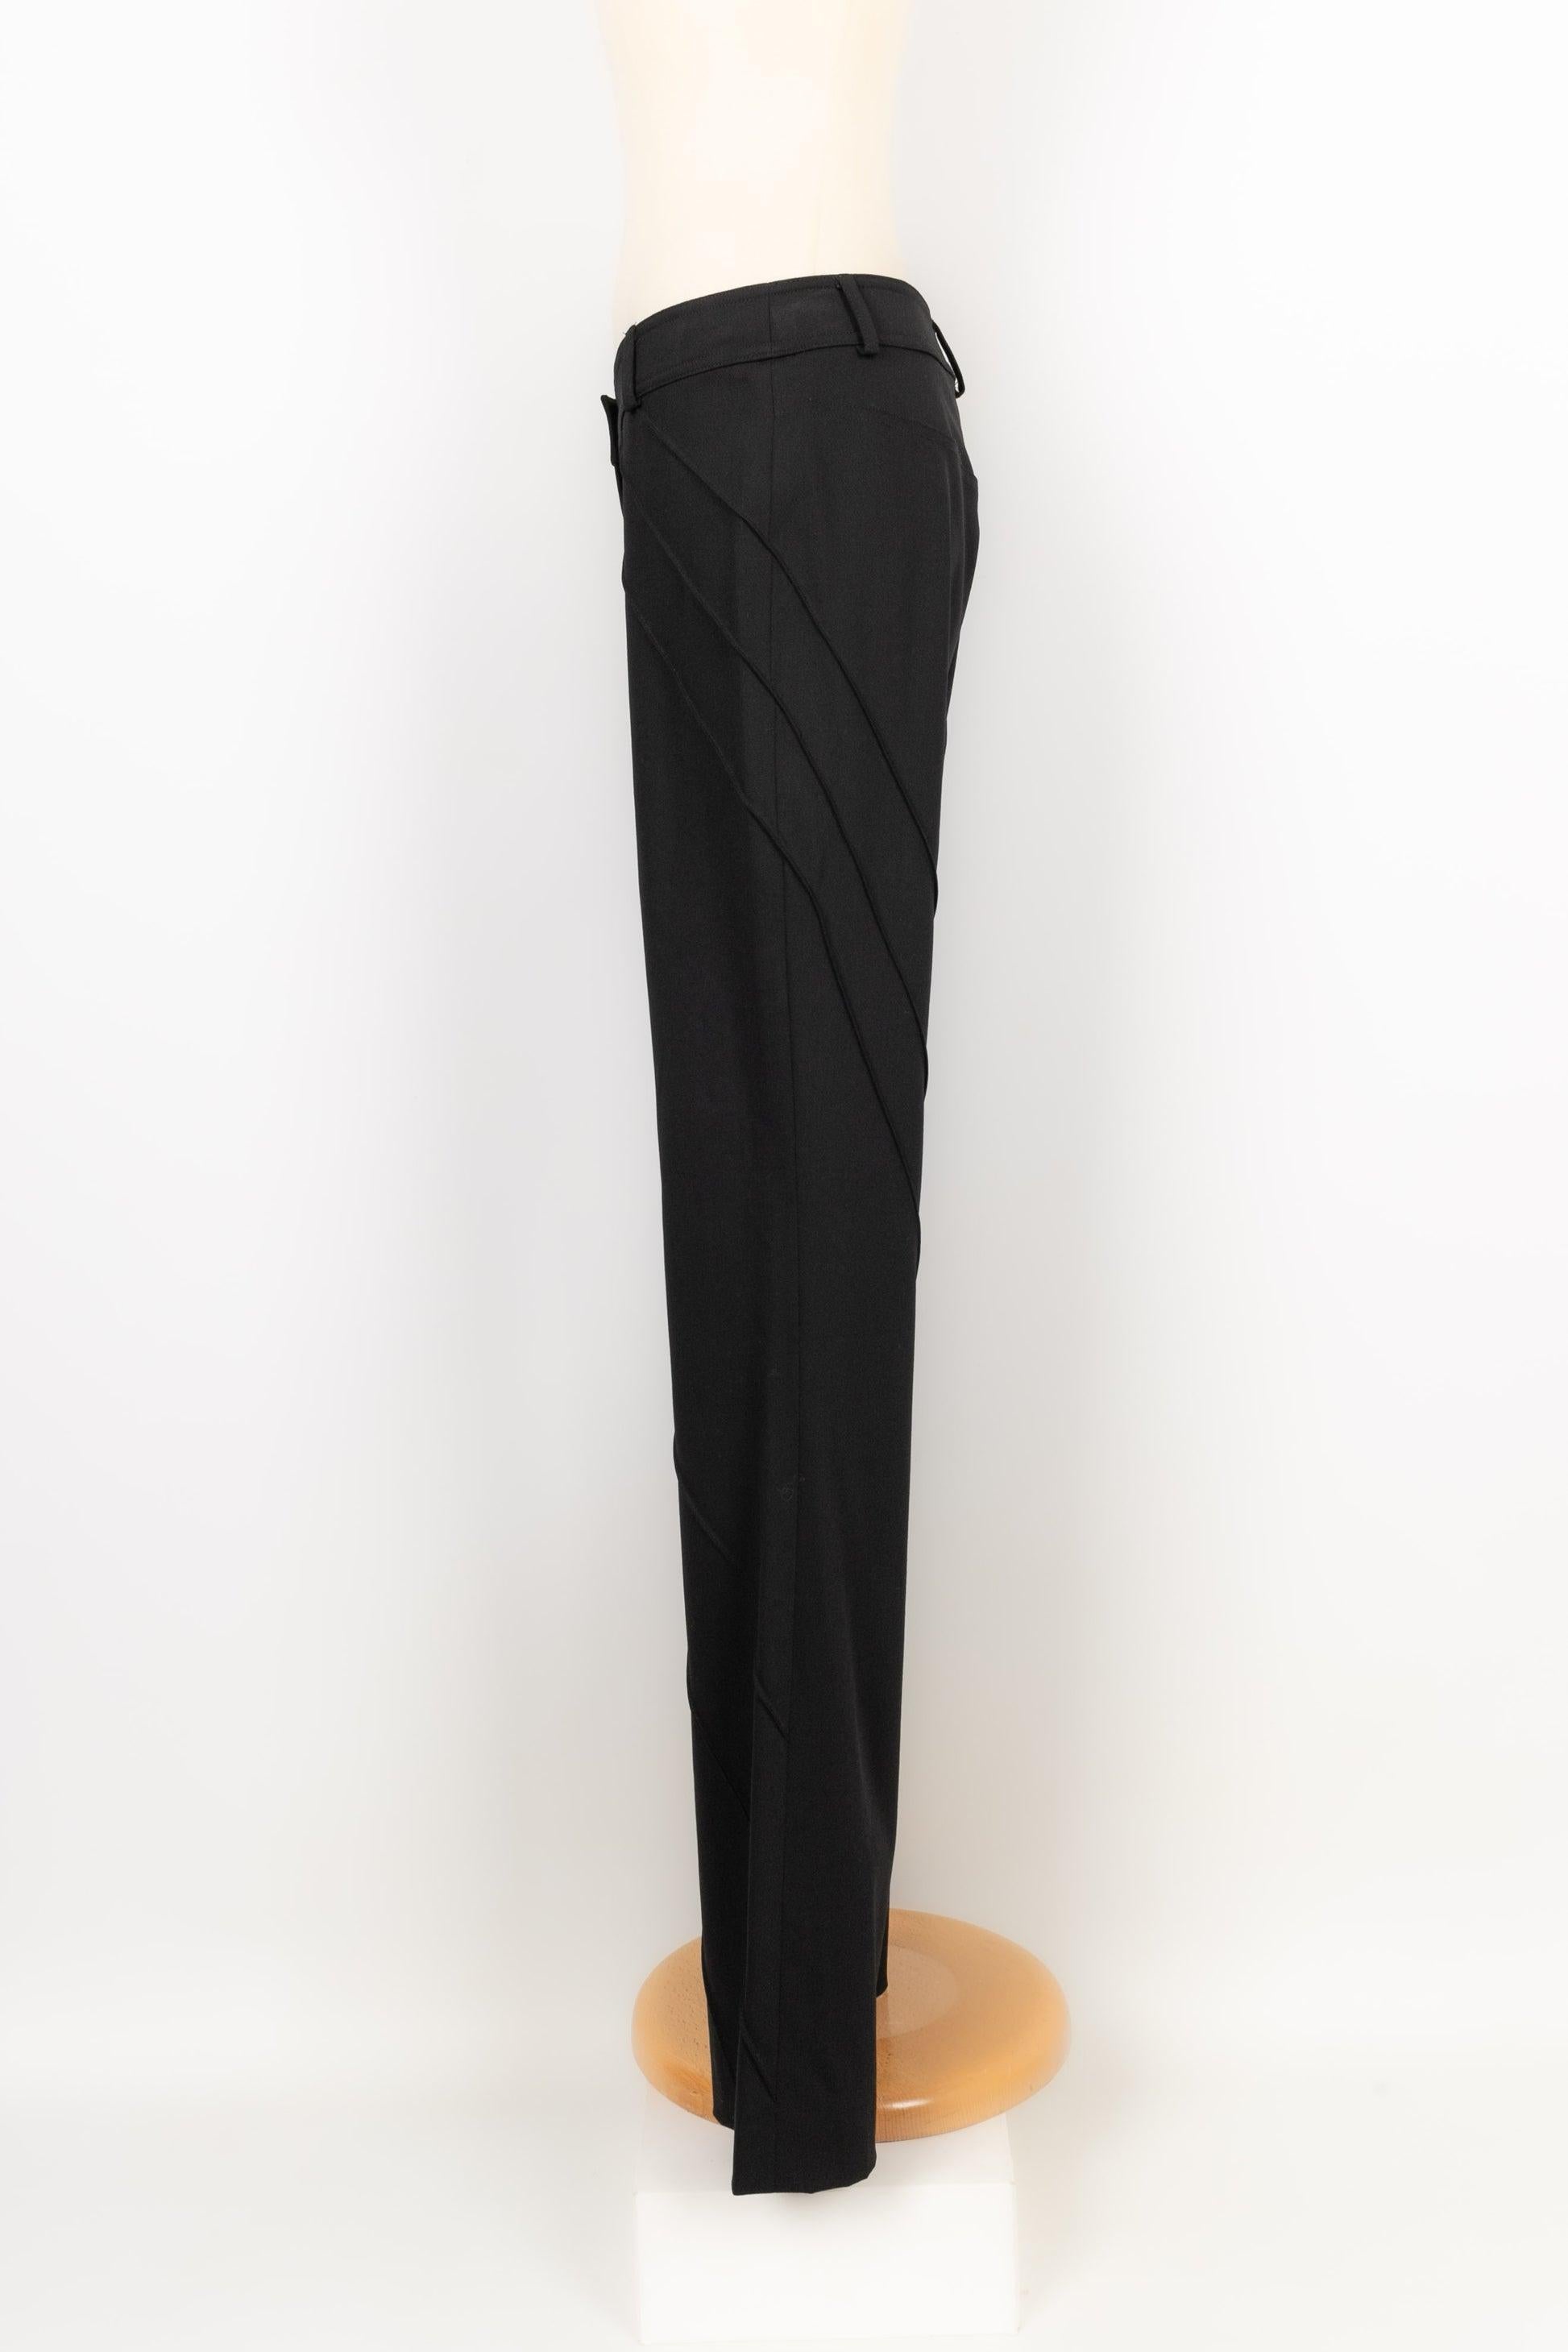 Dior - (Fabriqué en France) Pantalon en laine mélangée noire. Taille indiquée 38FR.

Informations complémentaires :
Condit : Très bon état.
Dimensions : Taille : 40 cm - Longueur : 103 cm

Référence du vendeur : FJ78
